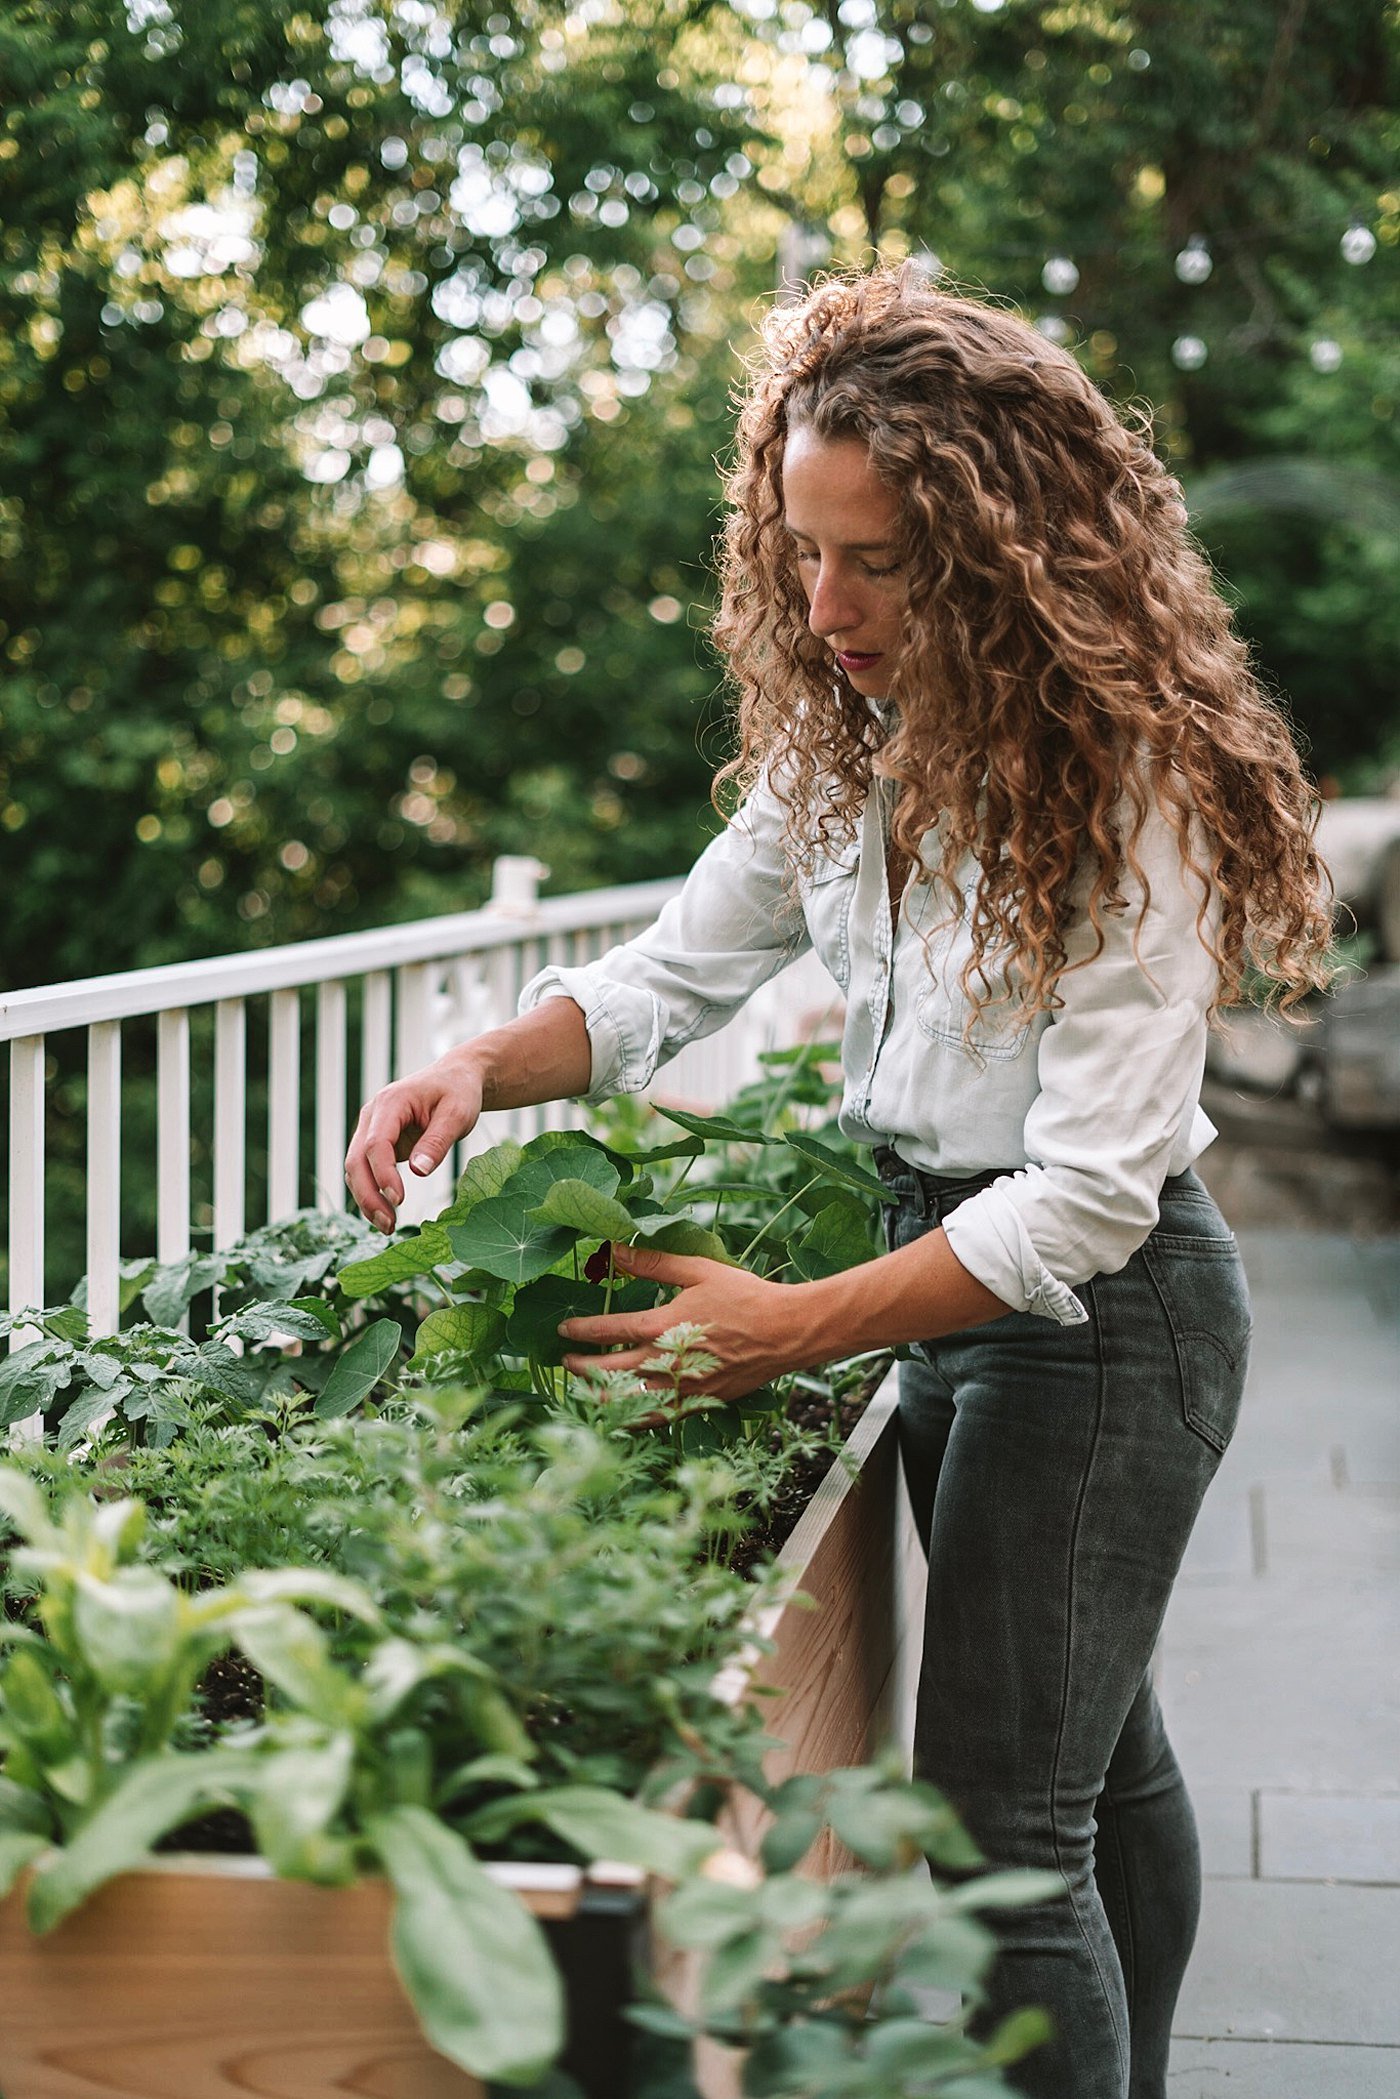 vegetable gardening tips for beginners